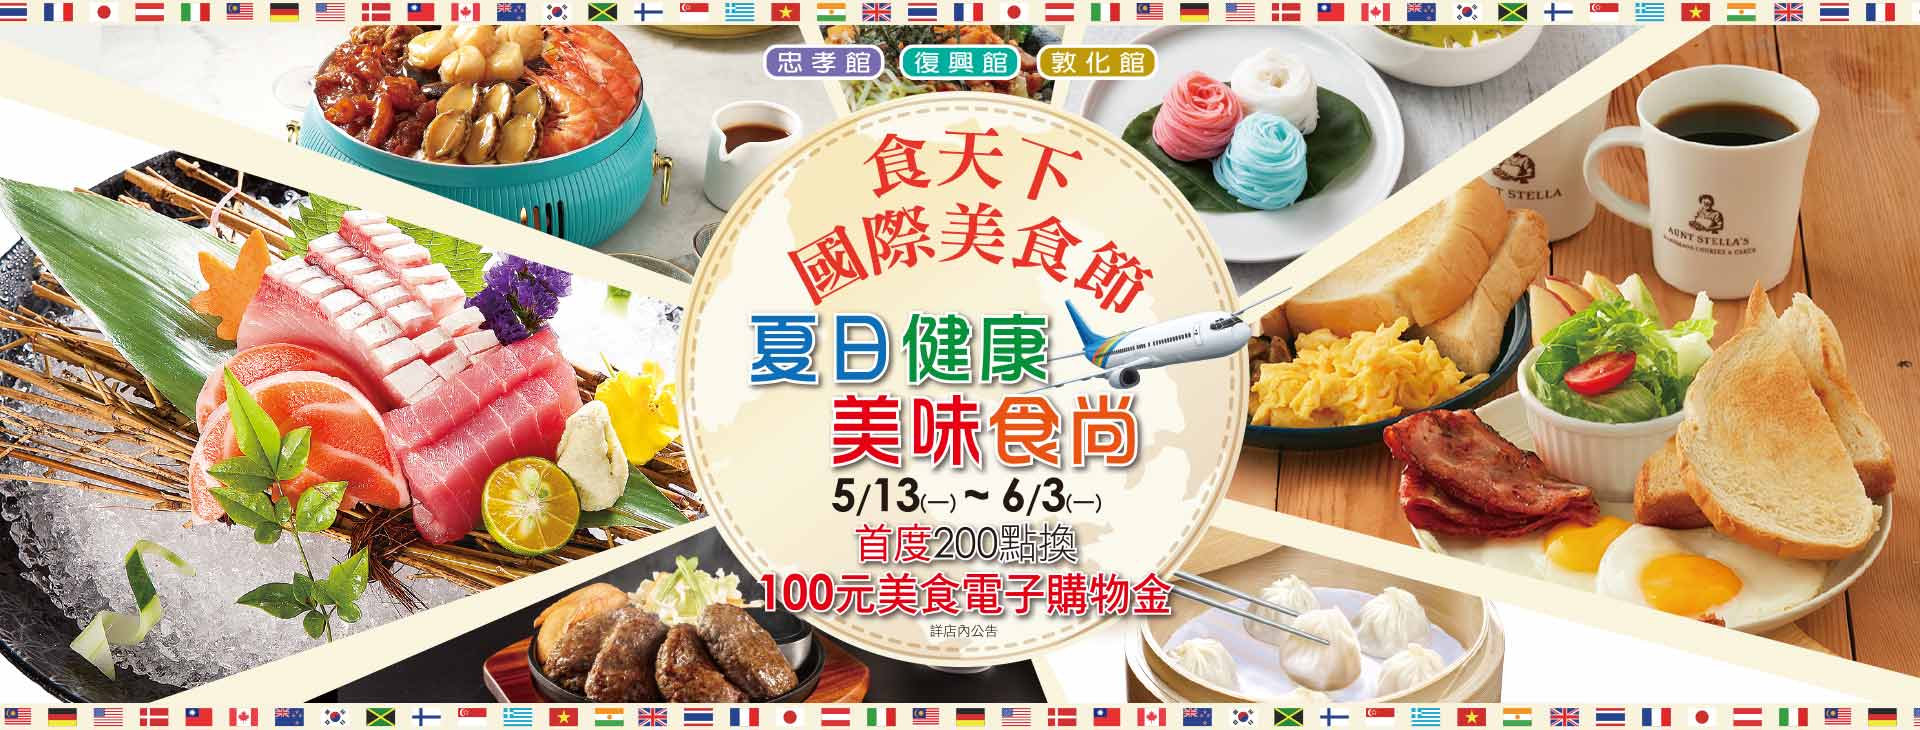 【總首頁】台北三館 食天下 國際美食節~夏日健康 美味食尚